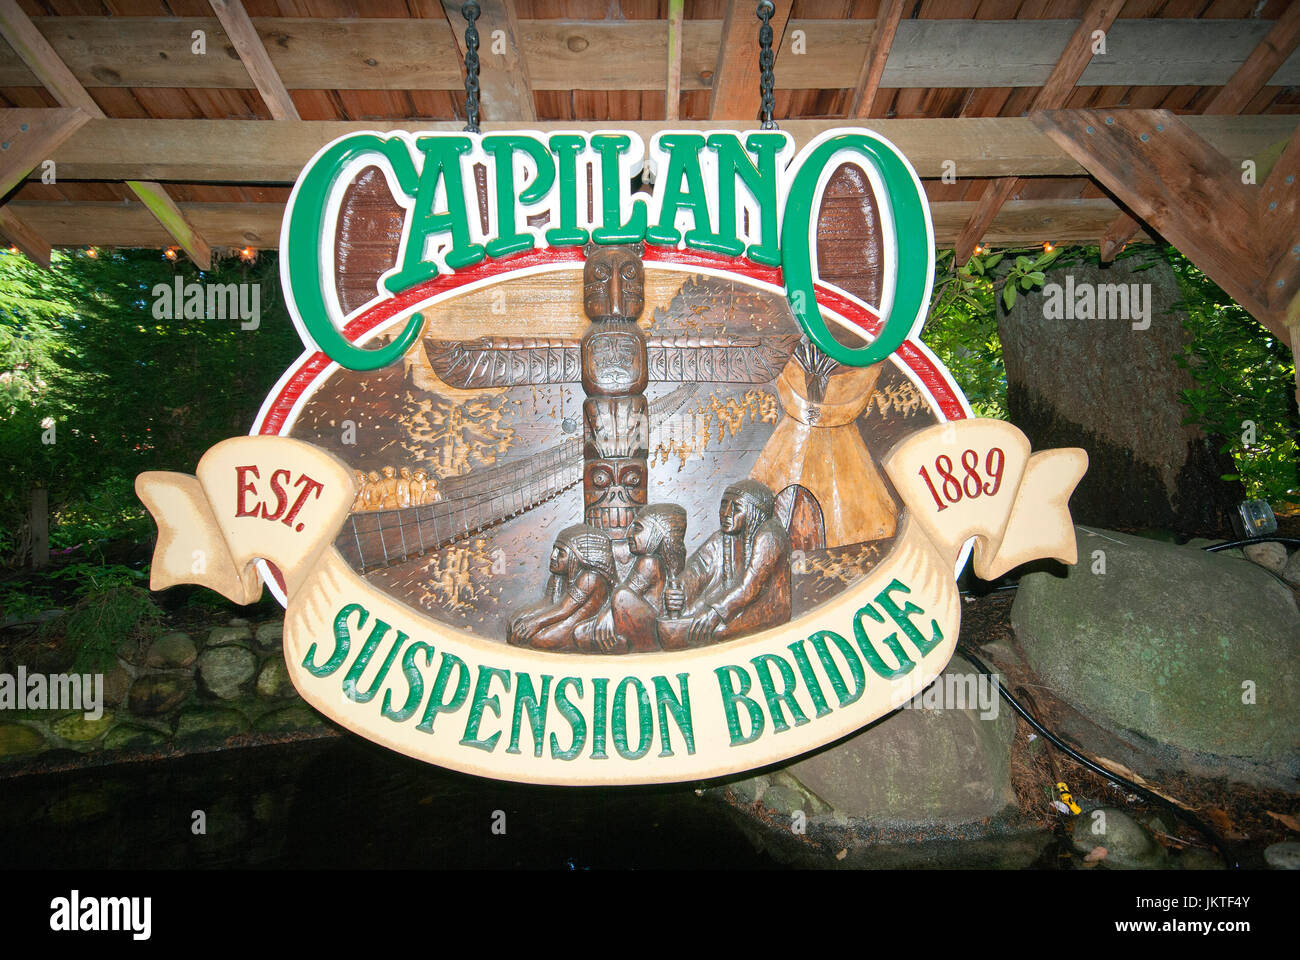 Signo de madera tallada en el Capilano Suspension Bridge Park, Vancouver, British Columbia, Canadá Foto de stock